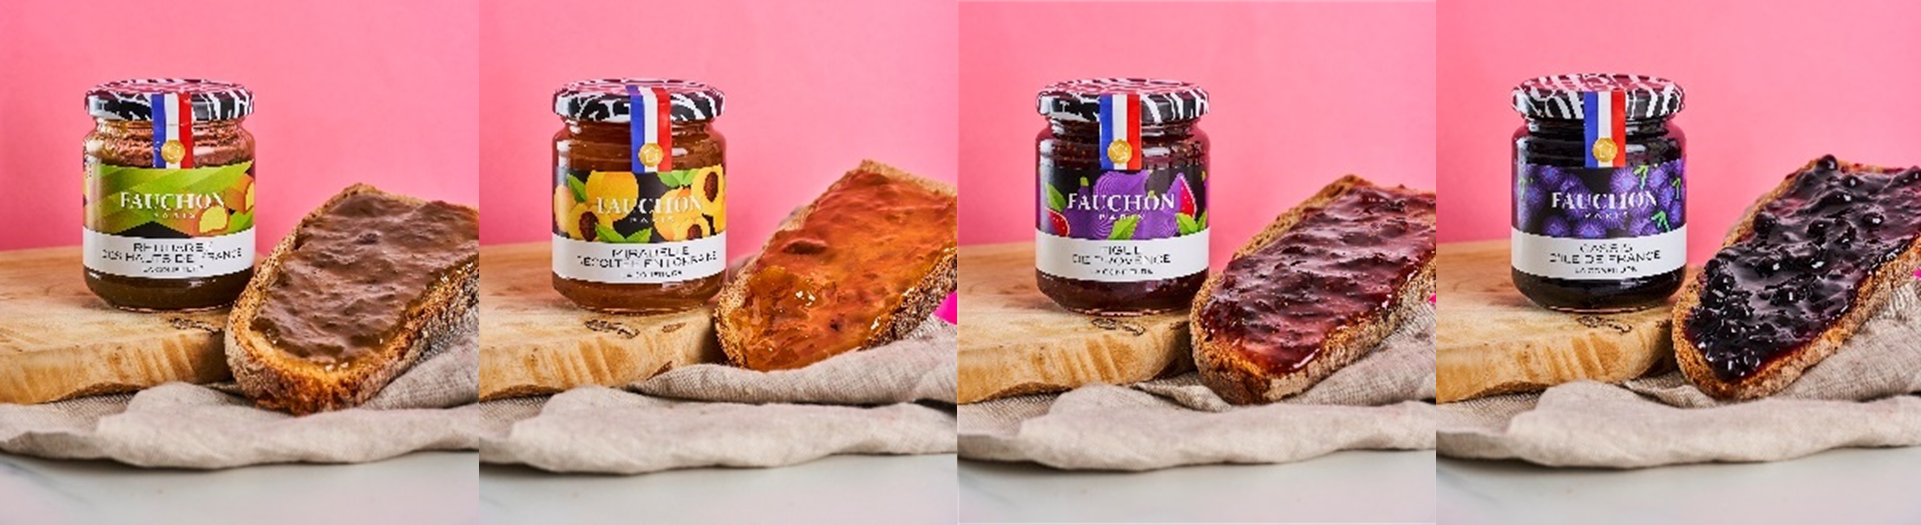 パリ発・美食のトップブランドFAUCHON(フォション)
日本上陸50年を迎え、「メイドインF」にこだわり抜いて
フランス各地の特産果実・野菜で作ったフルーツジャム4種を発売